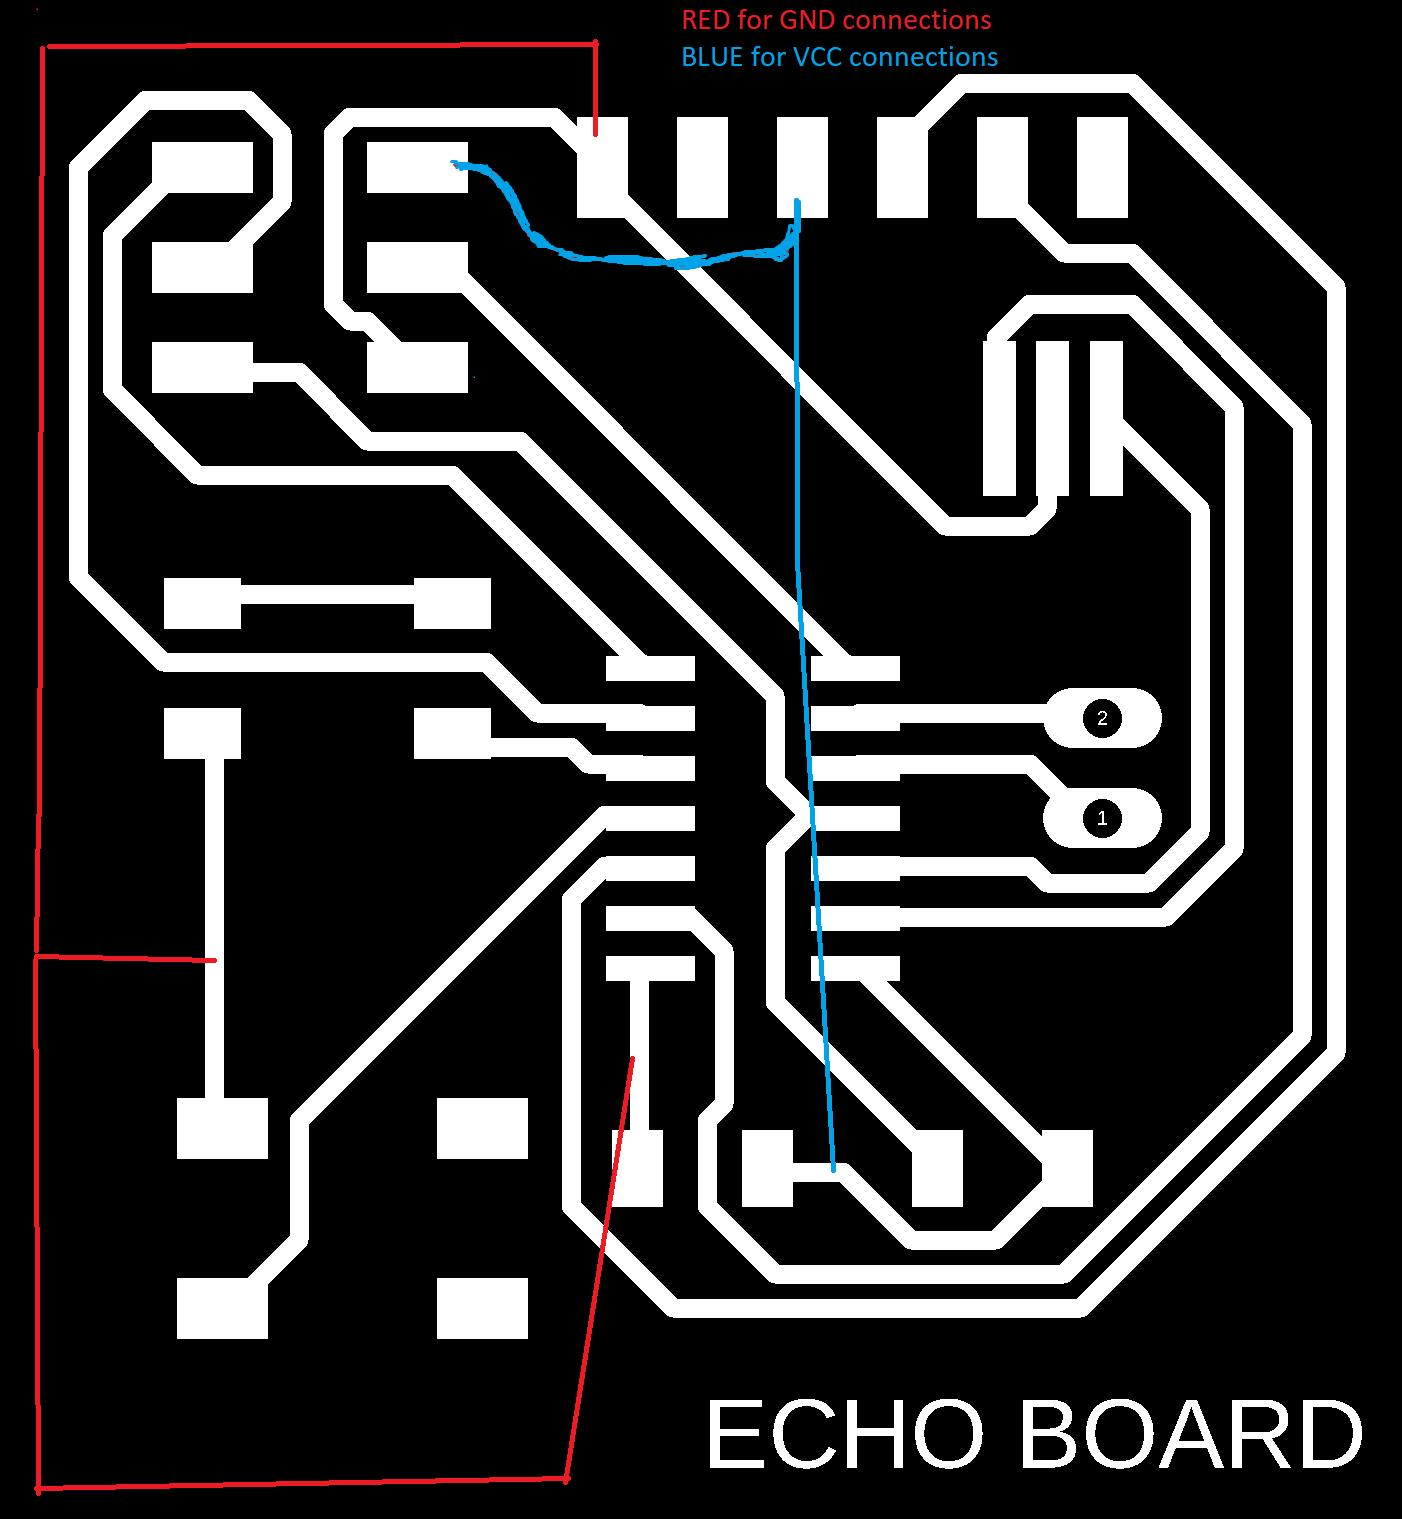 echoboardhacked image 